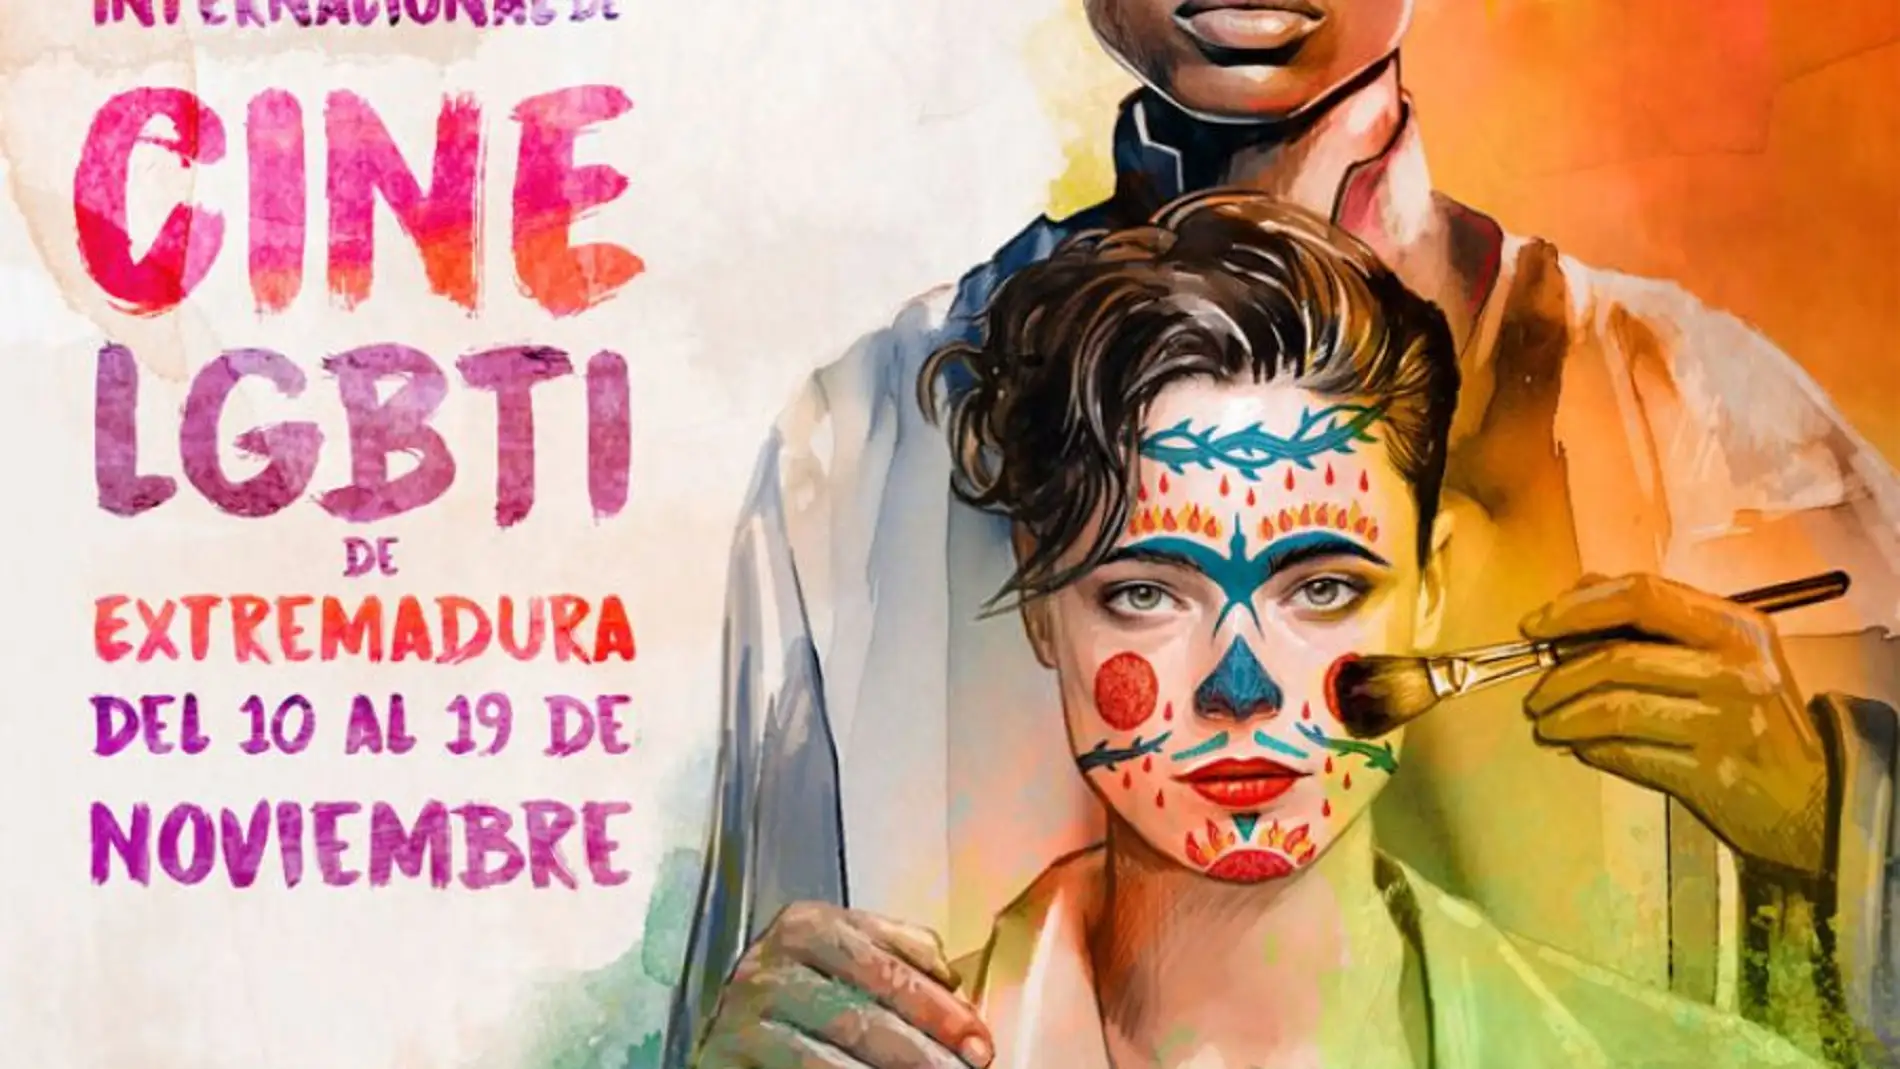 El Festival FanCineGay/Queer llegará con más de 80 proyecciones y actividades en 33 localidades de Extremadura